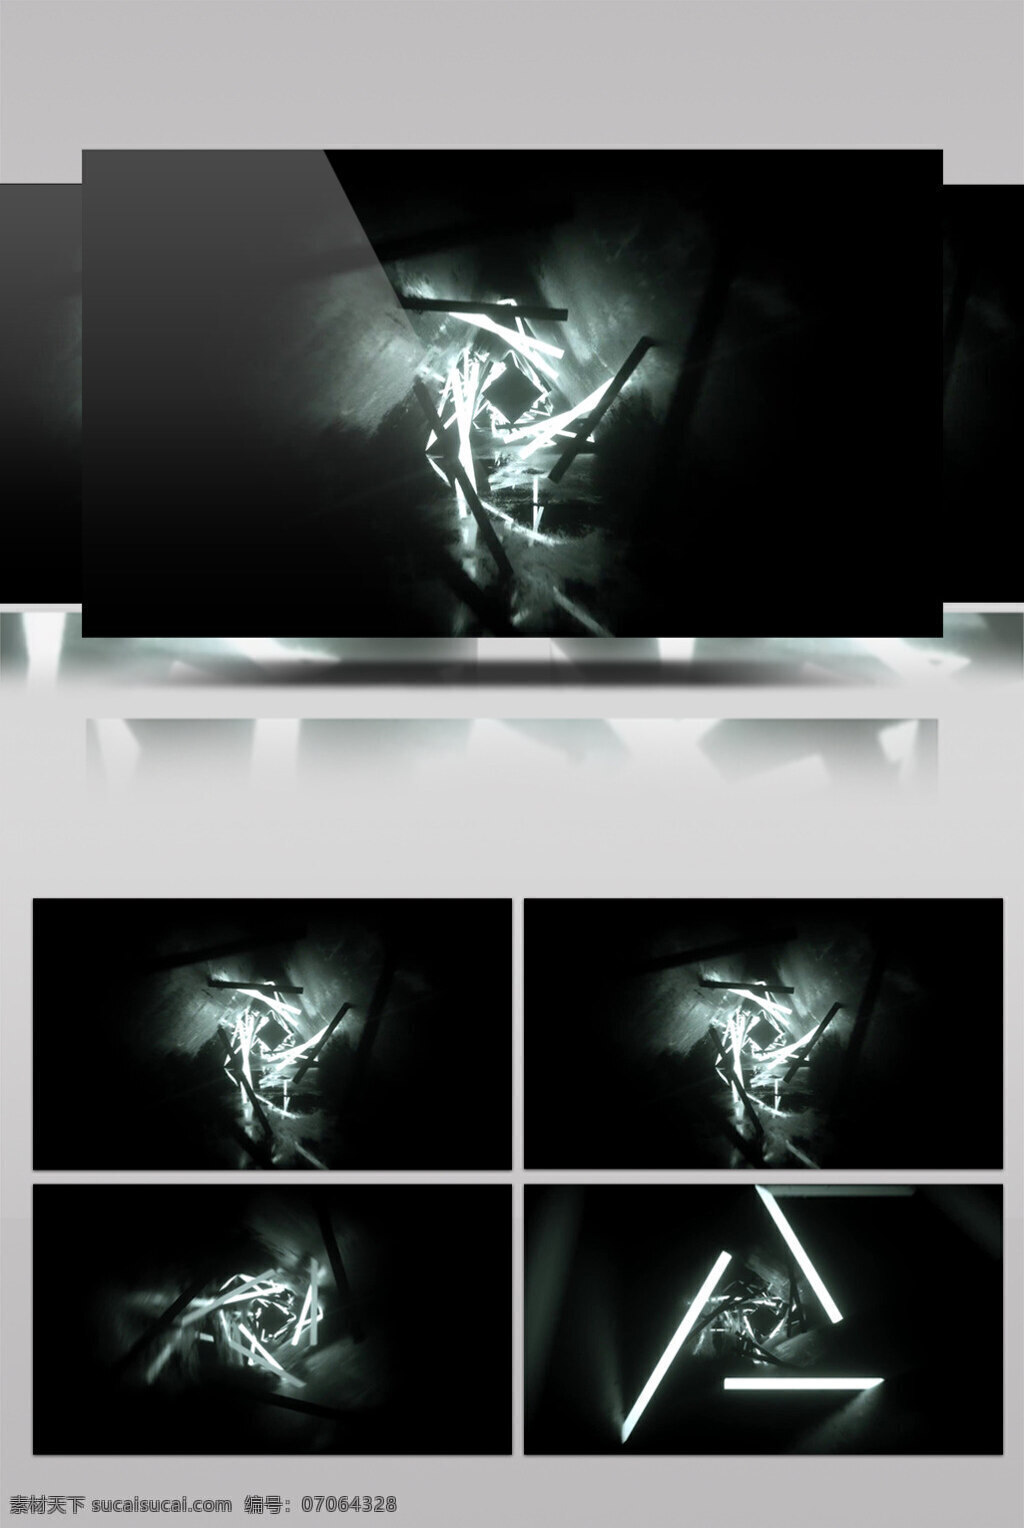 白 无色 动态 视频 白色幻光 三角旋转 生活抽象 画面意境 动态抽象 高清视频素材 特效视频素材